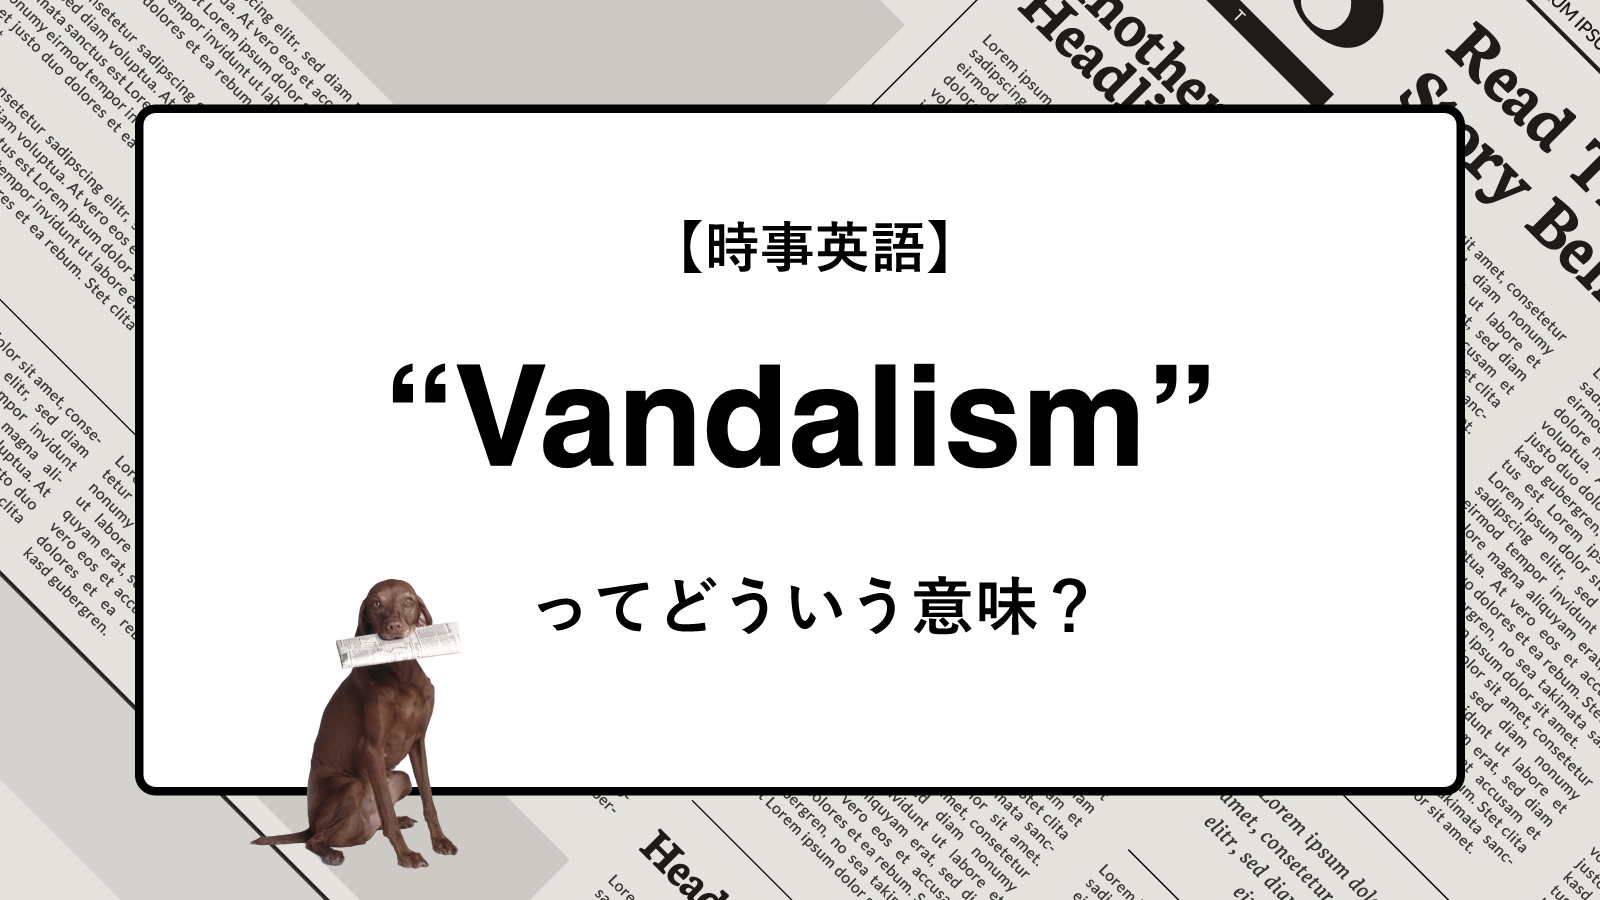 【時事英語】“Vandalism” ってどういう意味？ | ニュースの「キーワード」で語彙力を身につける